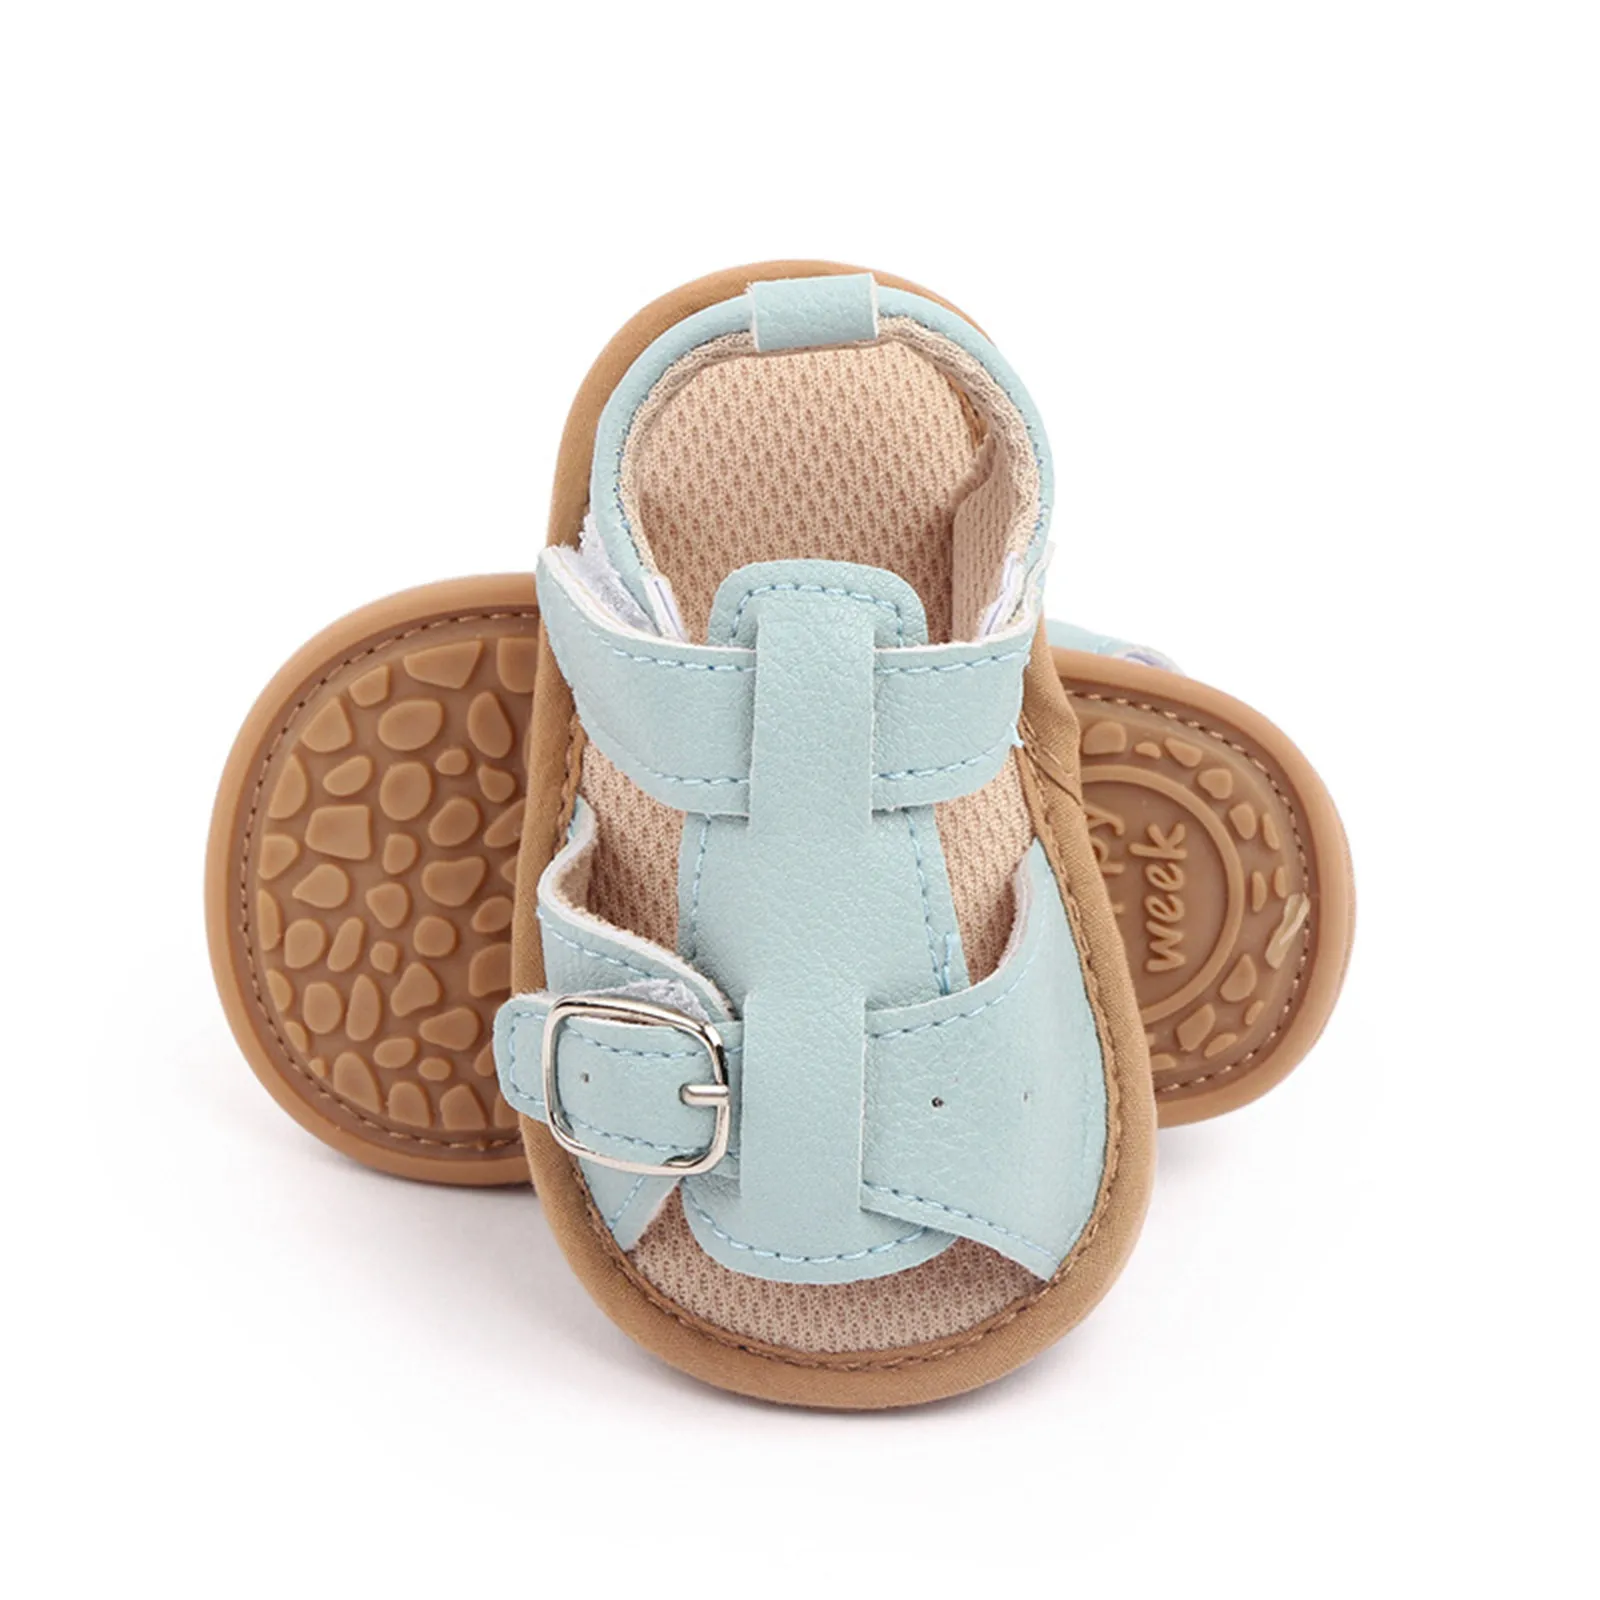 3-18 개월 아기 여름 샌들, 부드러운 단색 아기 신발, 버클 아기 침대 아기 신발, 첫 워커 아기 신발